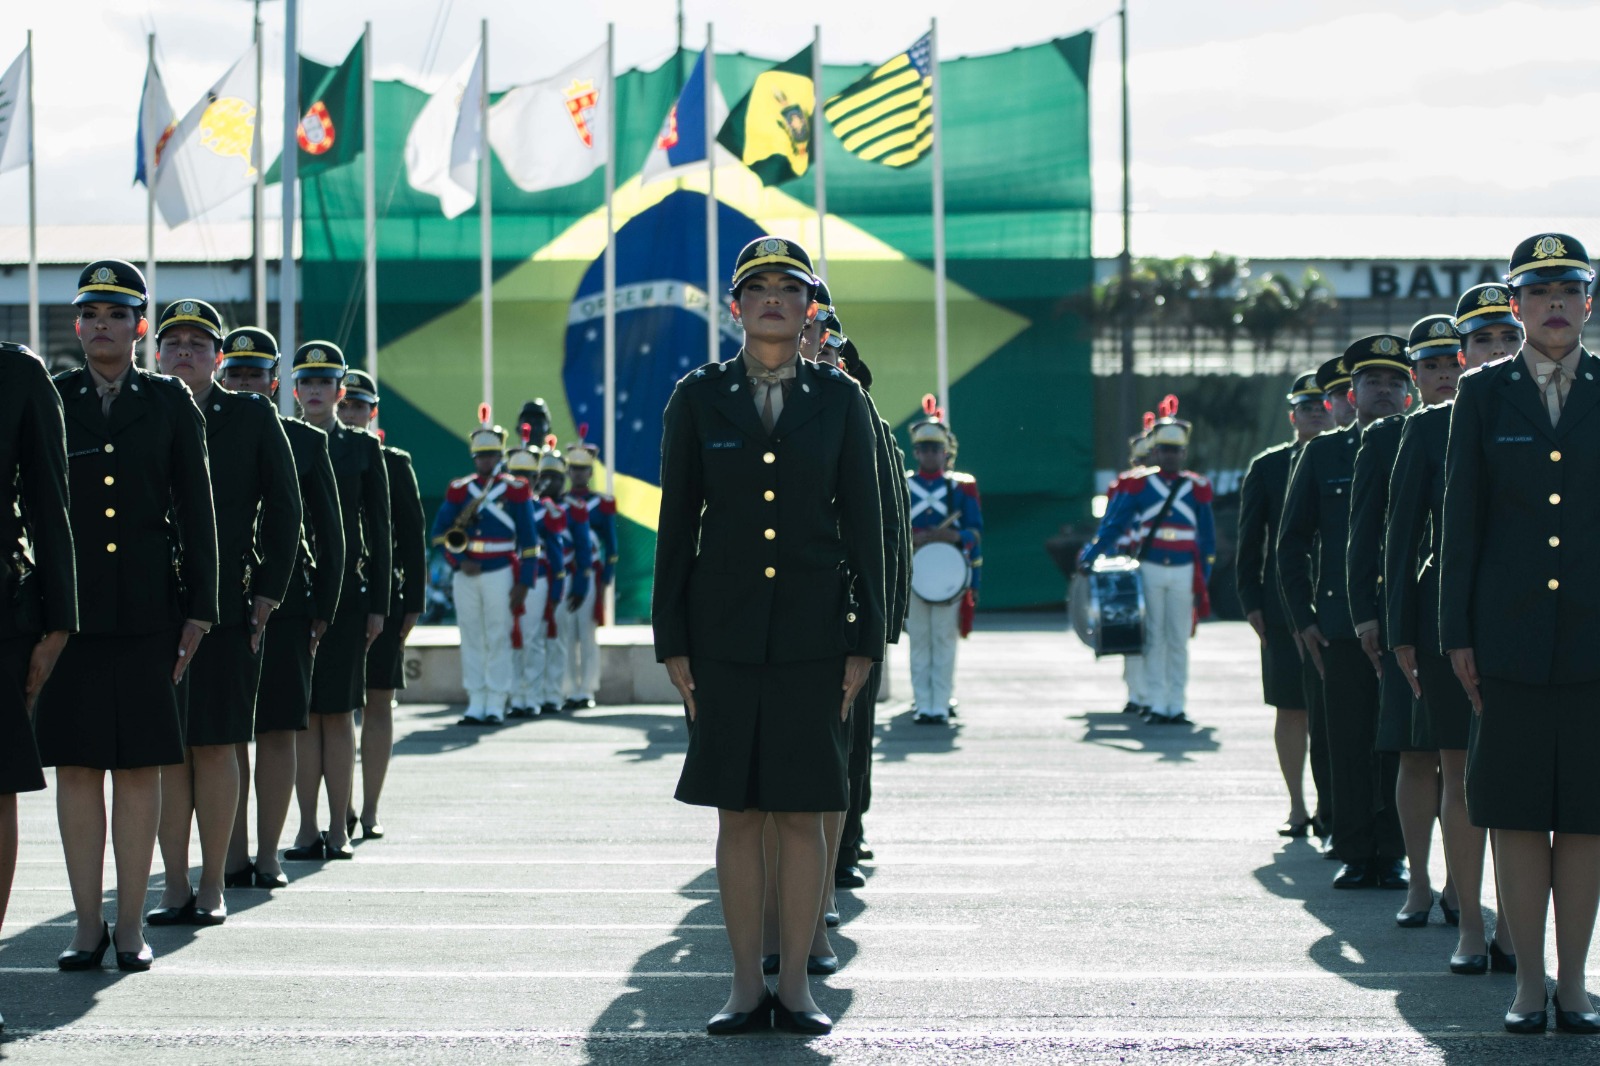 Exército Brasileiro - 3ª Região Militar (3ª RM): Processo Seletivo para  Oficiais e Sargentos Técnicos Temporários 2019/2020 - Radiologia RJ